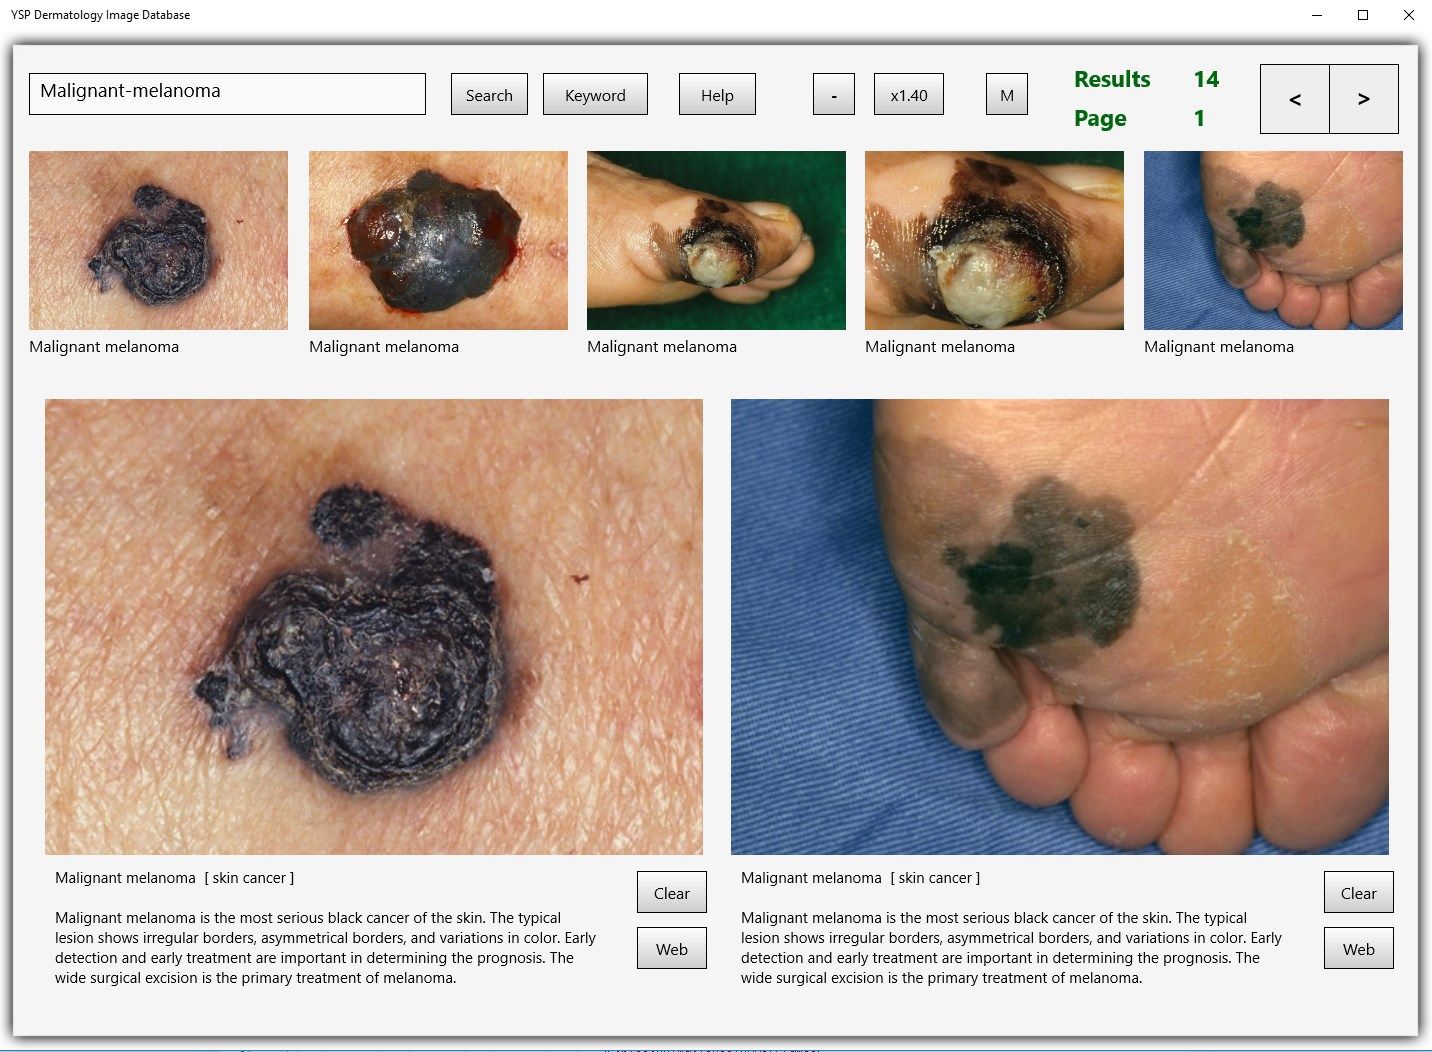 YSP Dermatology Image Database